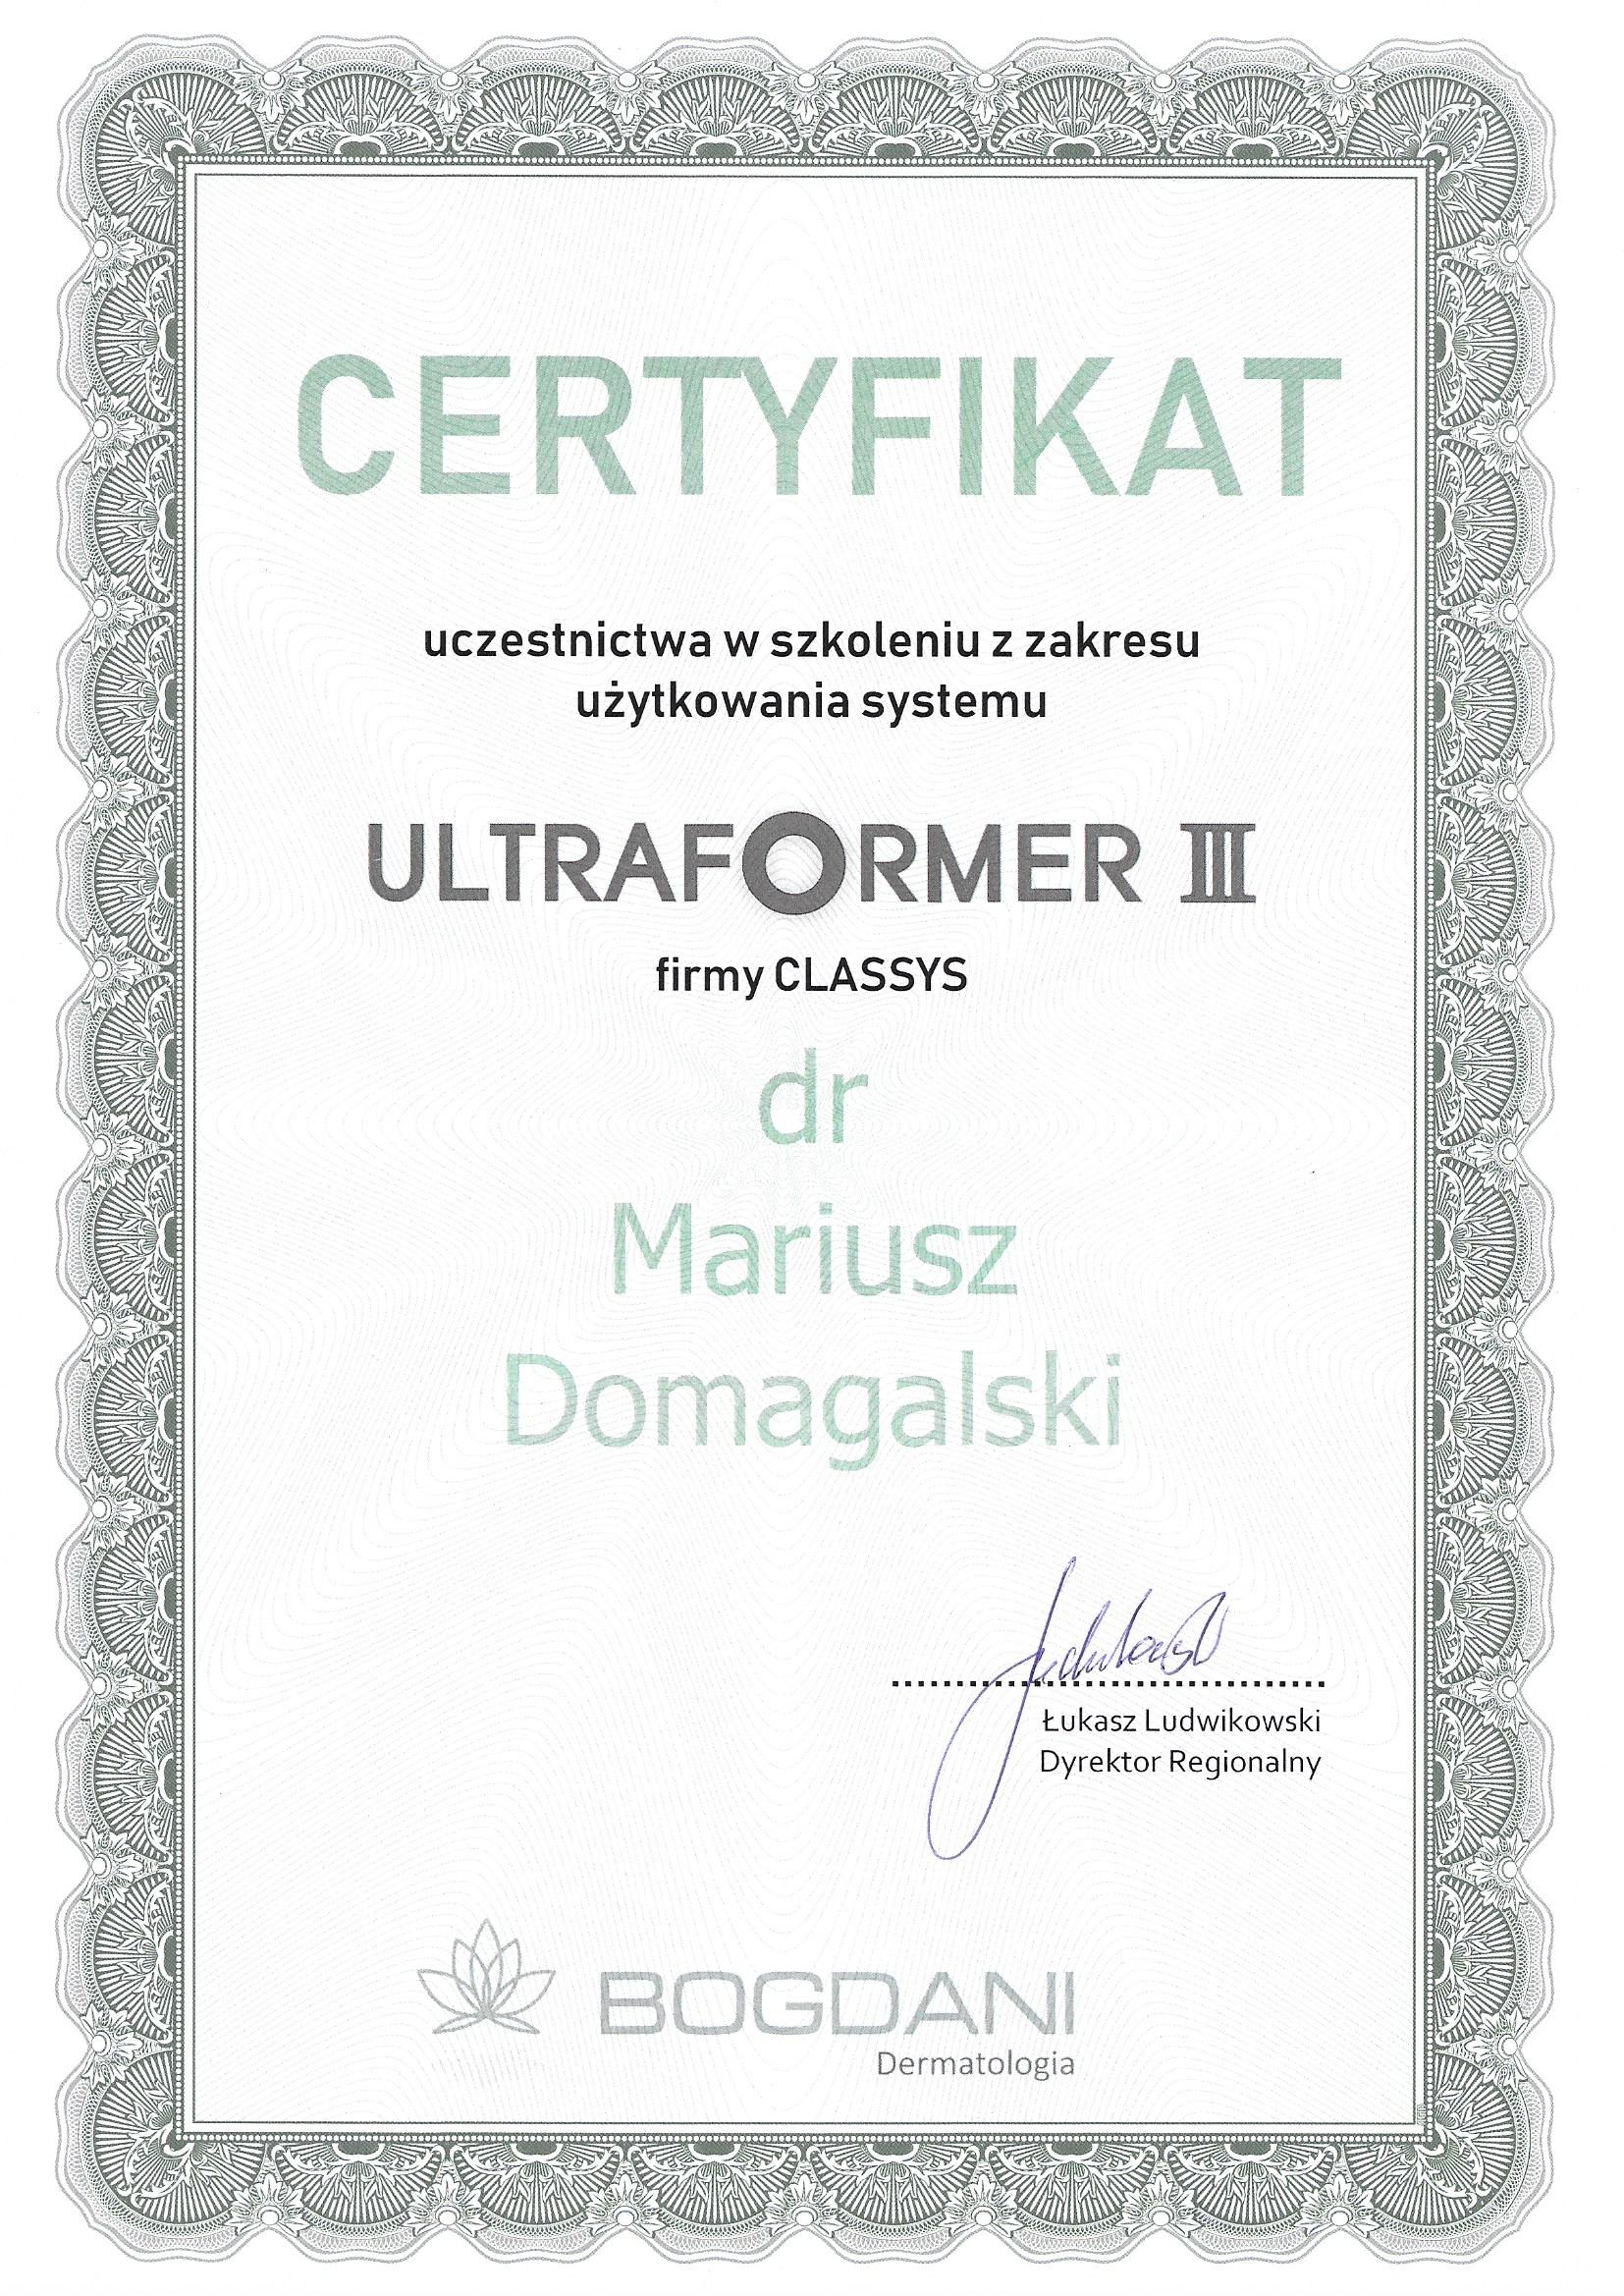 Certyfikat ukończenia szkolenia z zakresu użytkowania platformy laserowej Ultraformer III (2019)